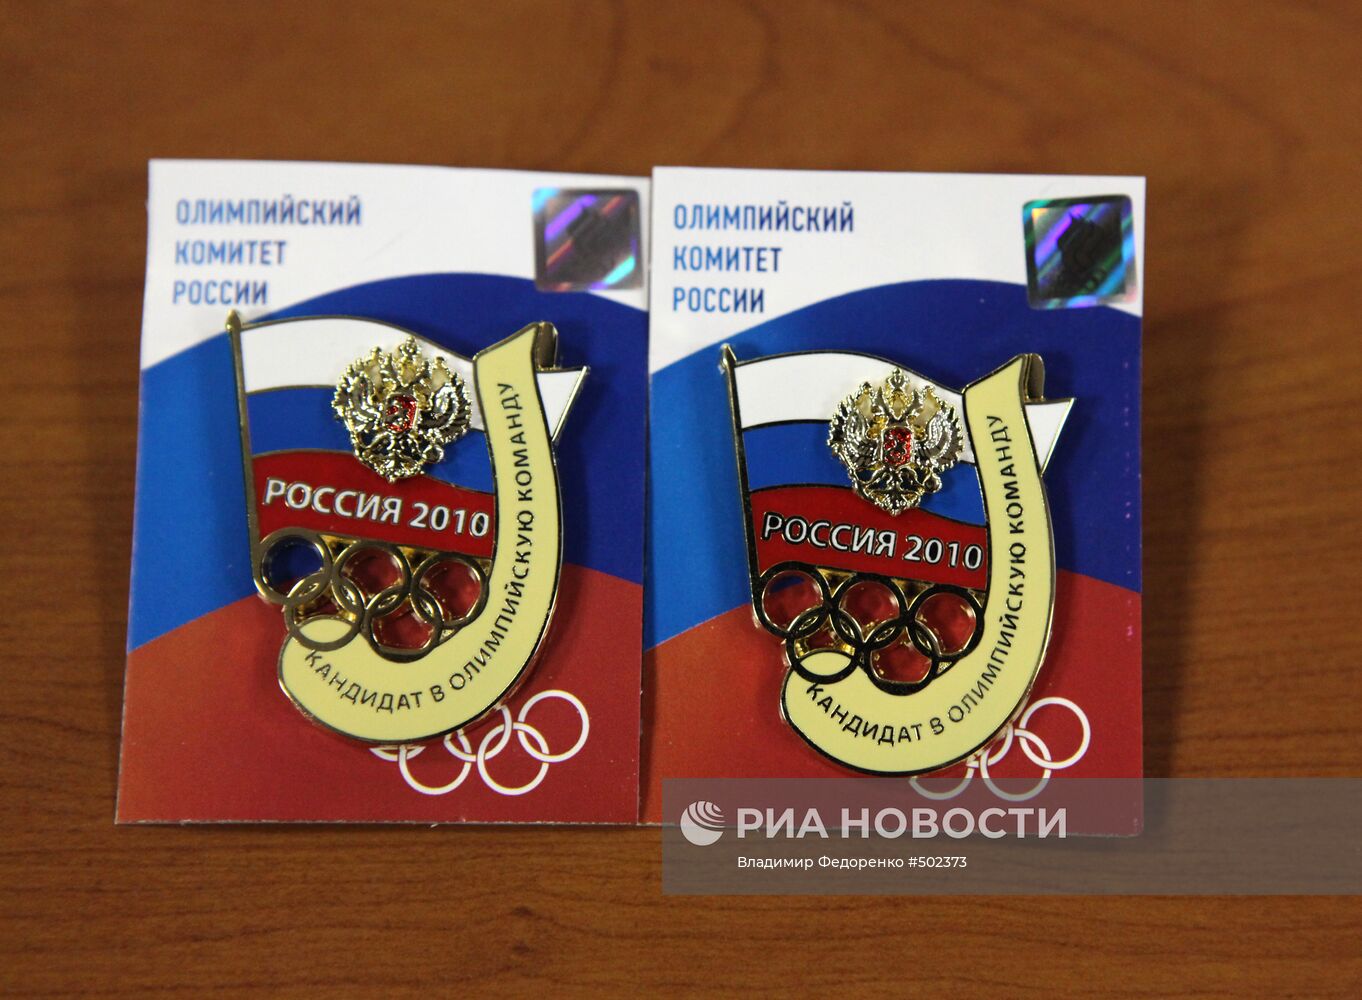 Значки кандидатов в олимпийскую сборную России